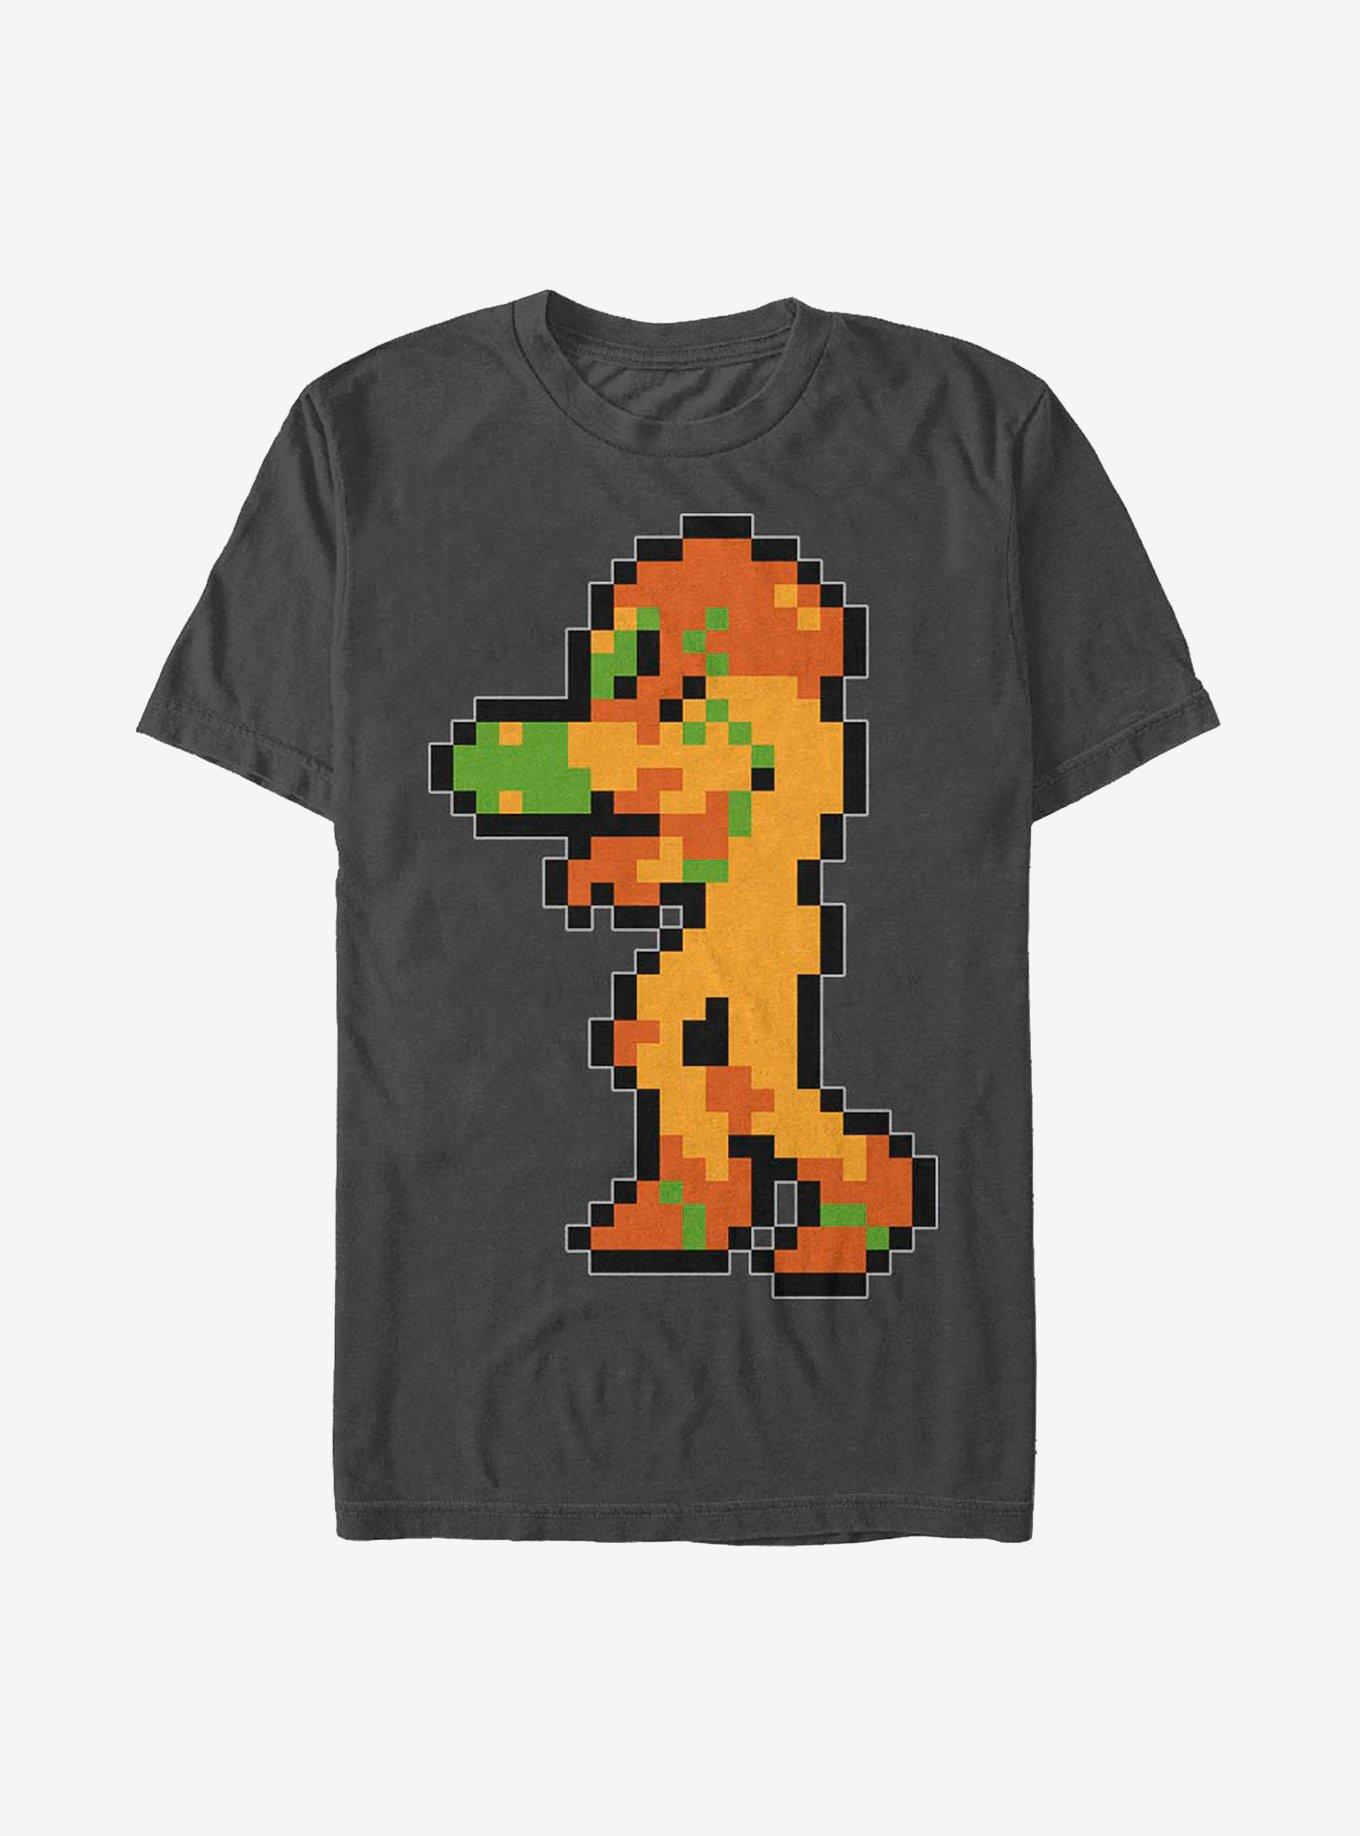 Nintendo Metroid Samus Pixels T-Shirt, CHARCOAL, hi-res